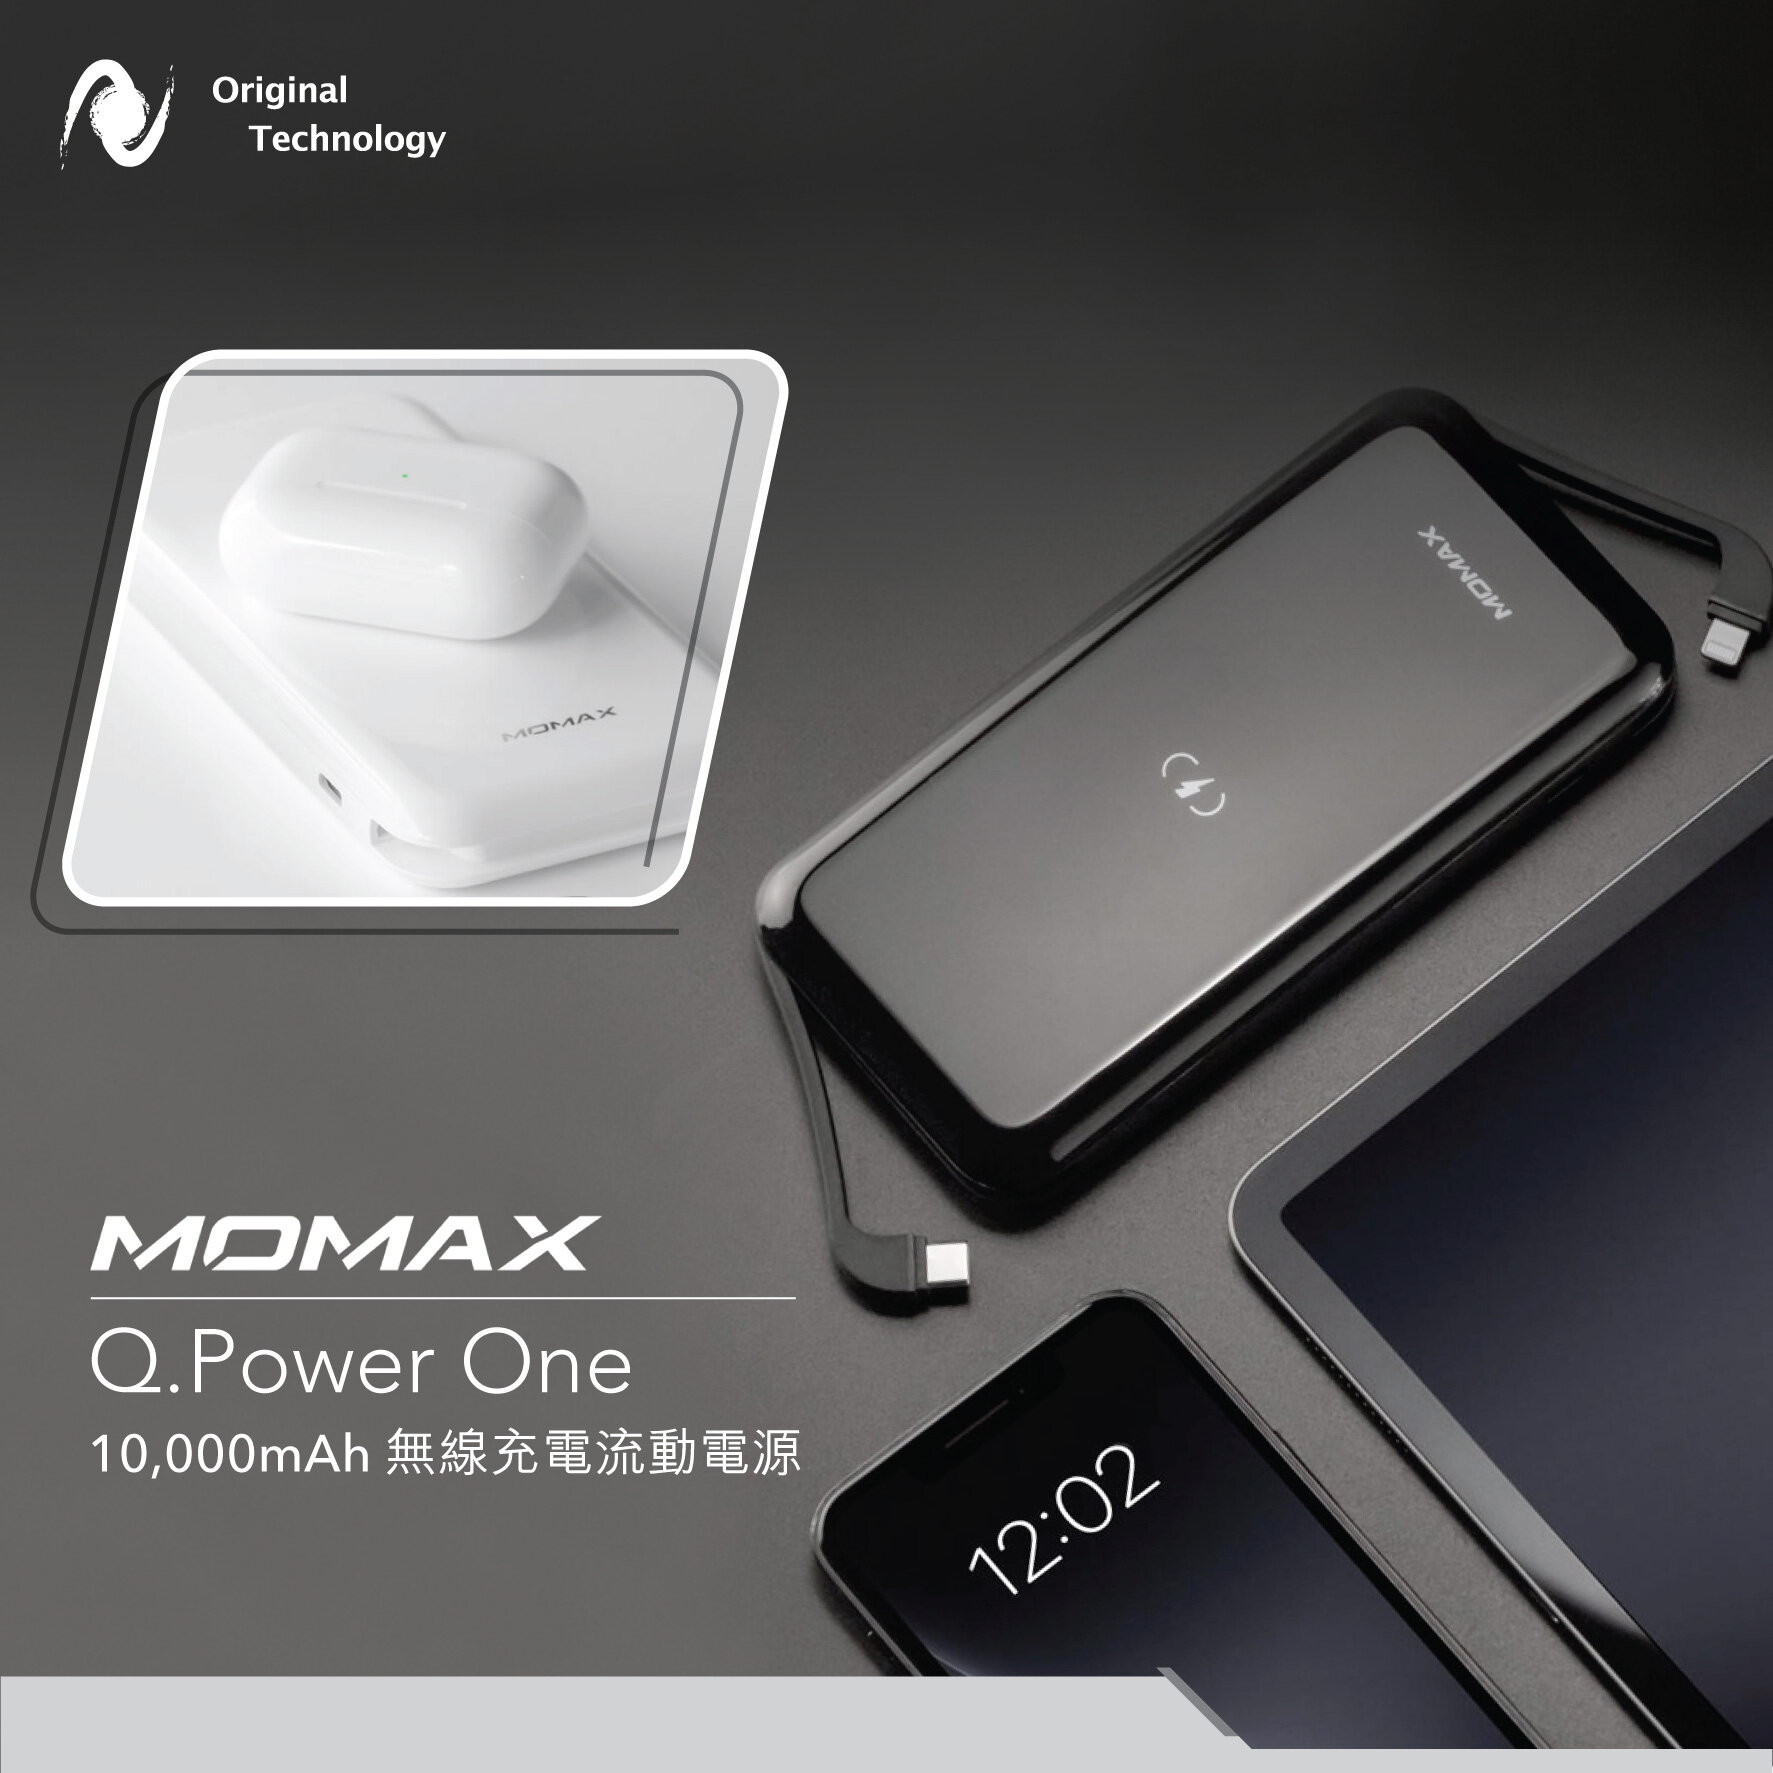 享受簡單直接充電 – Q.Power One Dual Wireless External Battery Pack 無線流動電源